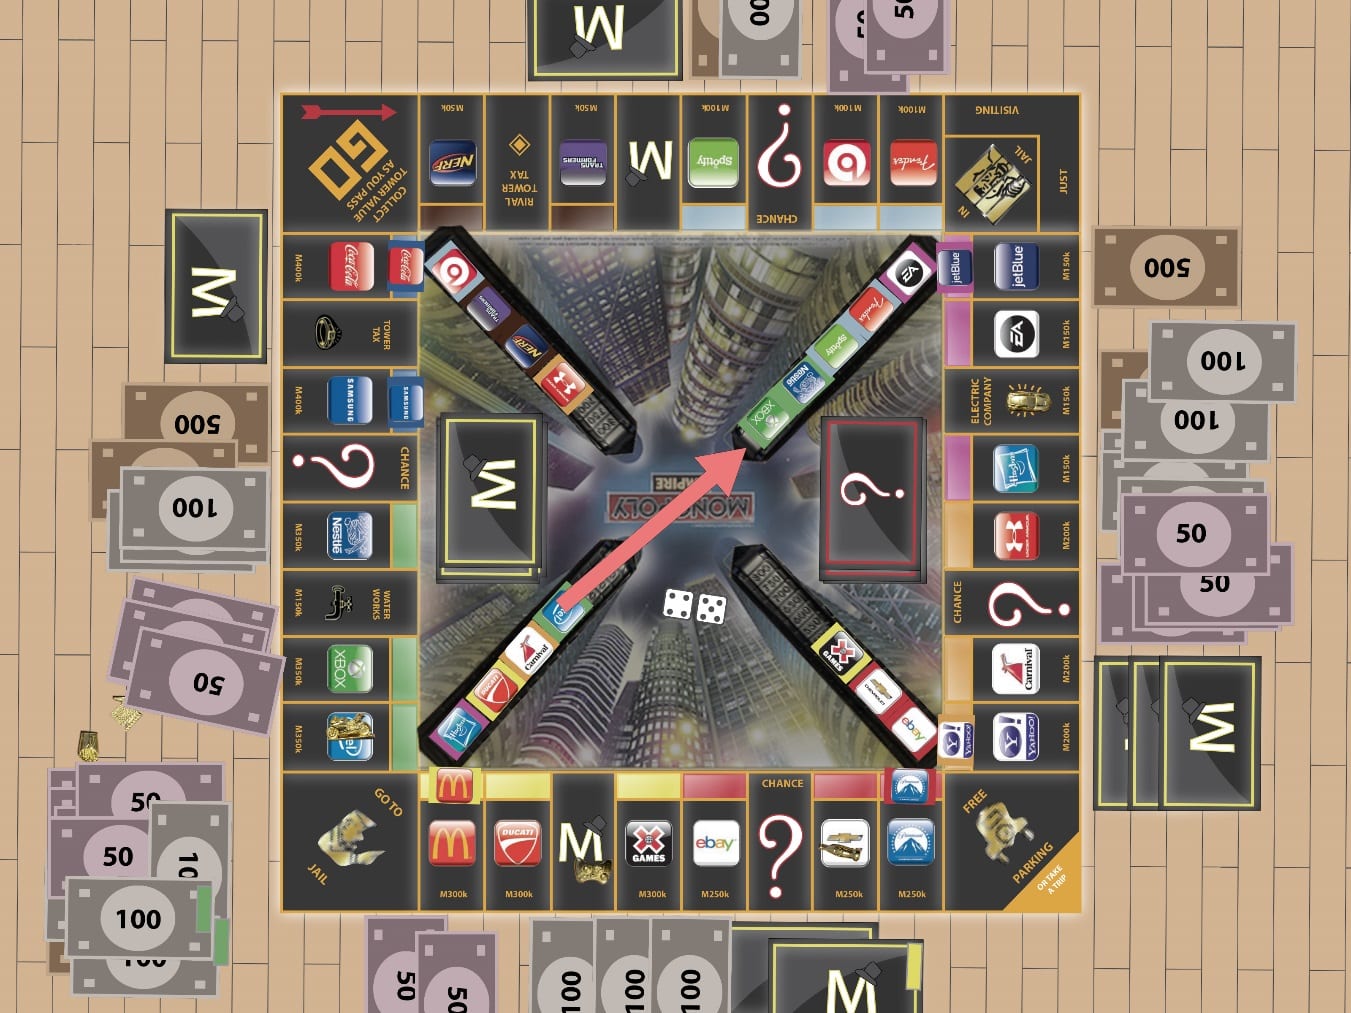 Tablero del juego de mesa Monopoly Empire